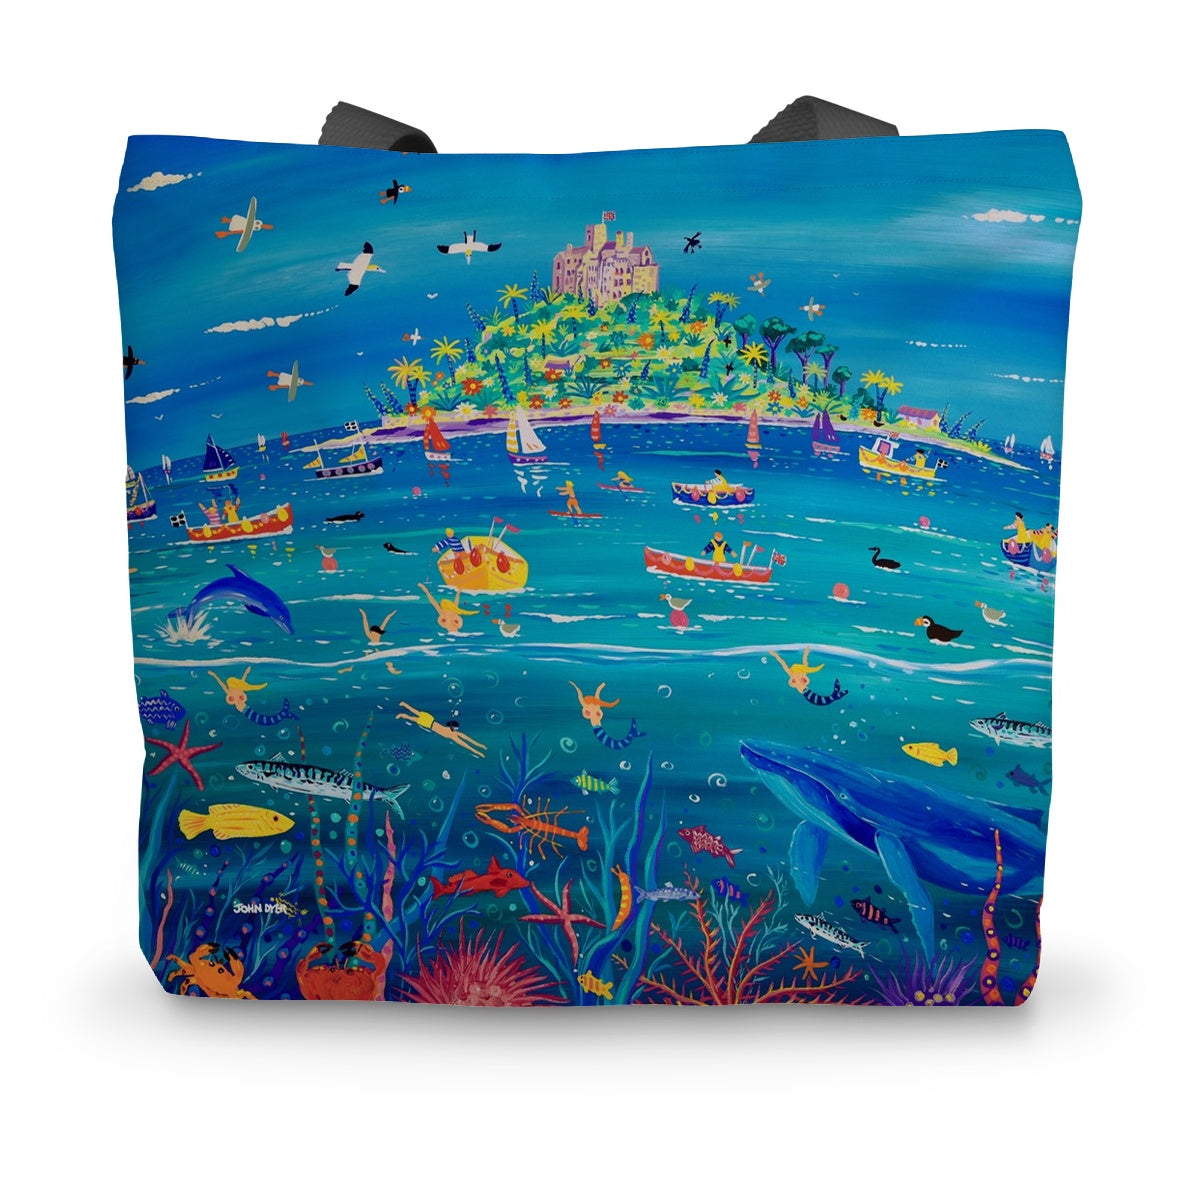 Underwater wonders by John Dyer Canvas Tote Bag